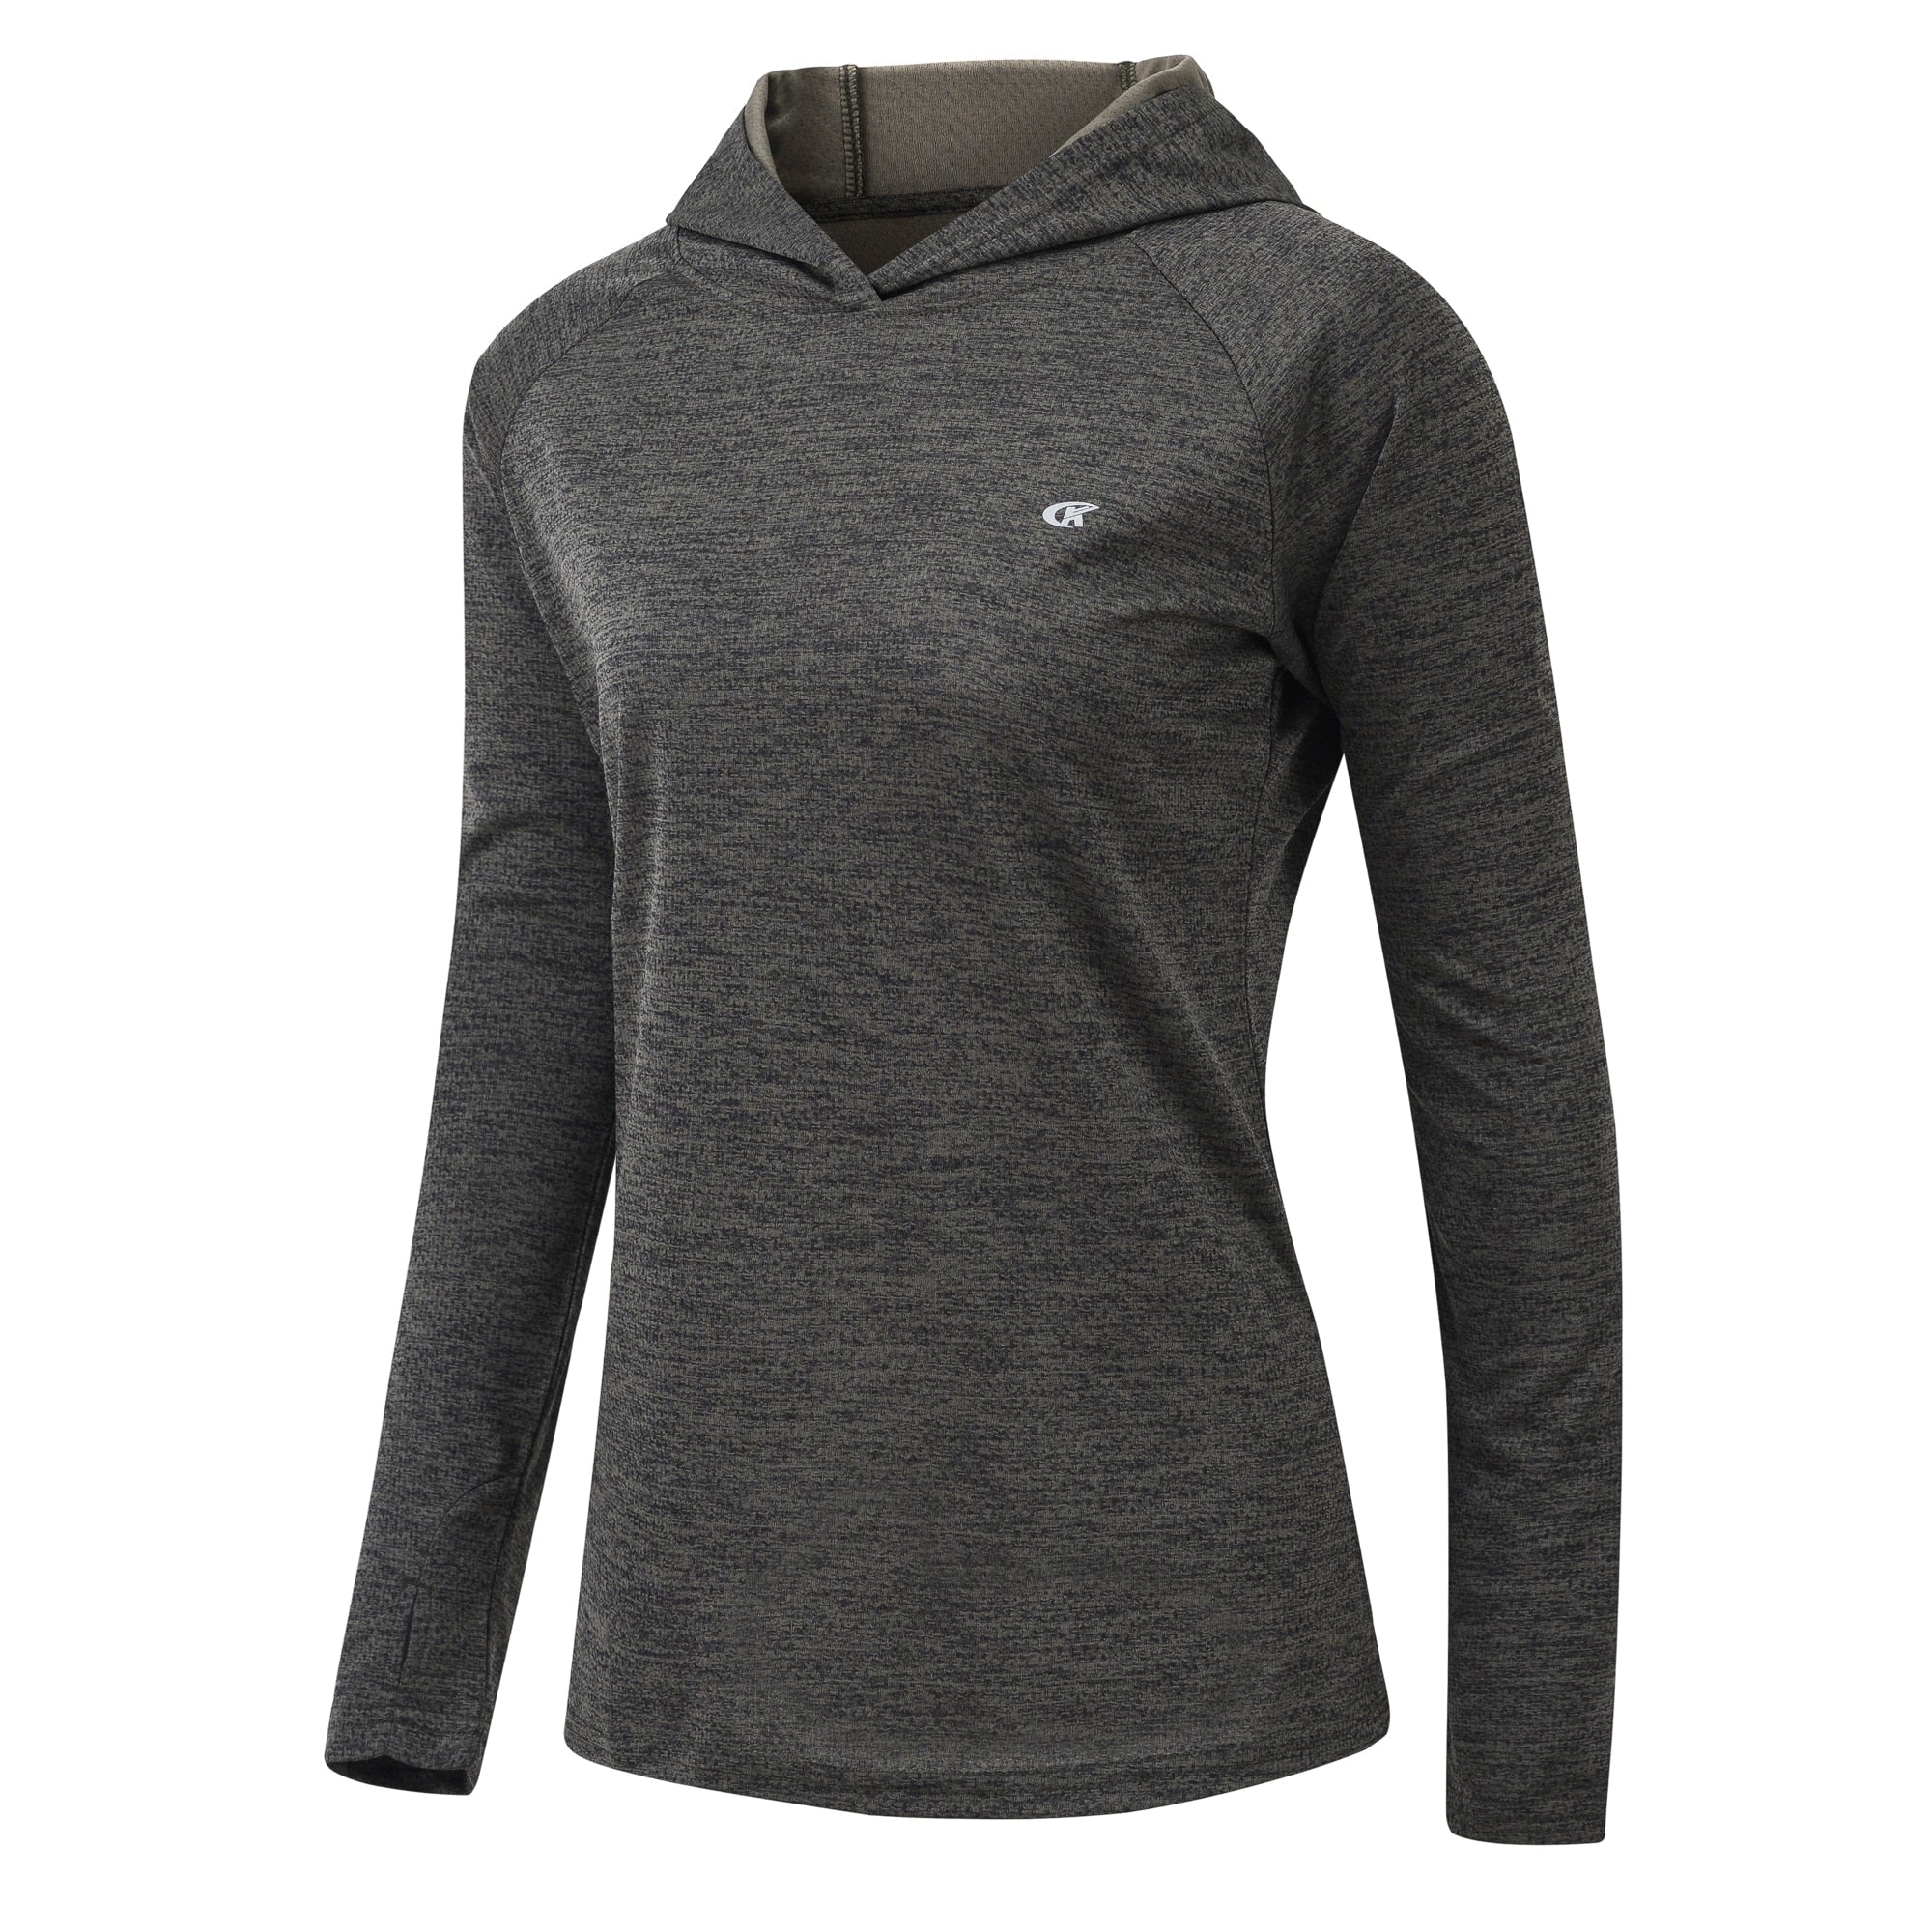 Acheter darkgrey Hiking and Running Long Sleeve T-Shirt Rash Guard UPF 50+ Quick Dry Lightweight For women